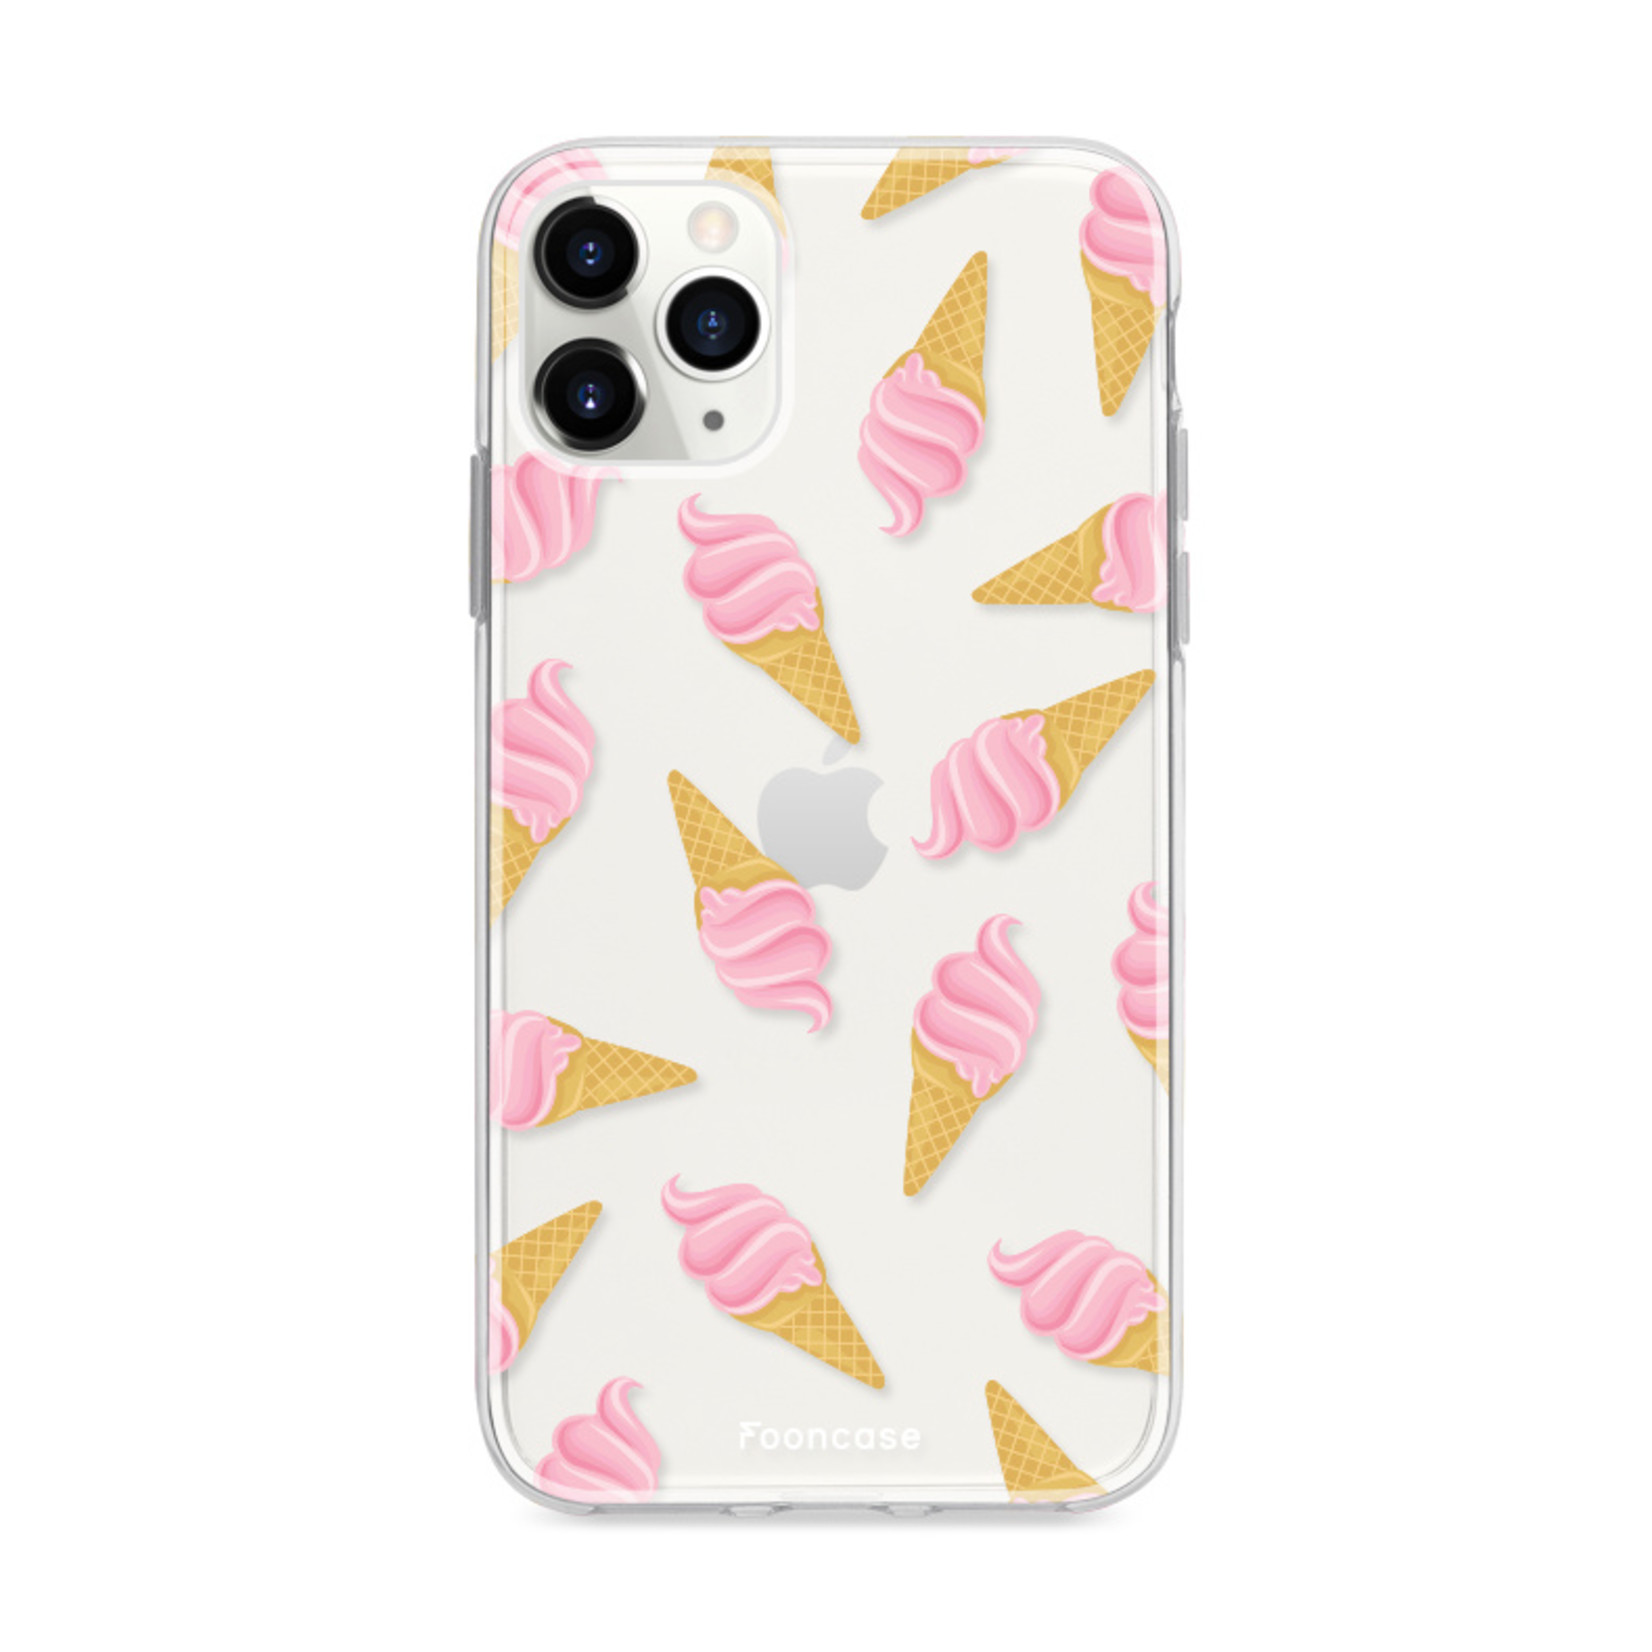 FOONCASE iPhone 11 Pro Max hoesje TPU Soft Case - Back Cover - Ice Ice Baby / Ijsjes / Roze ijsjes